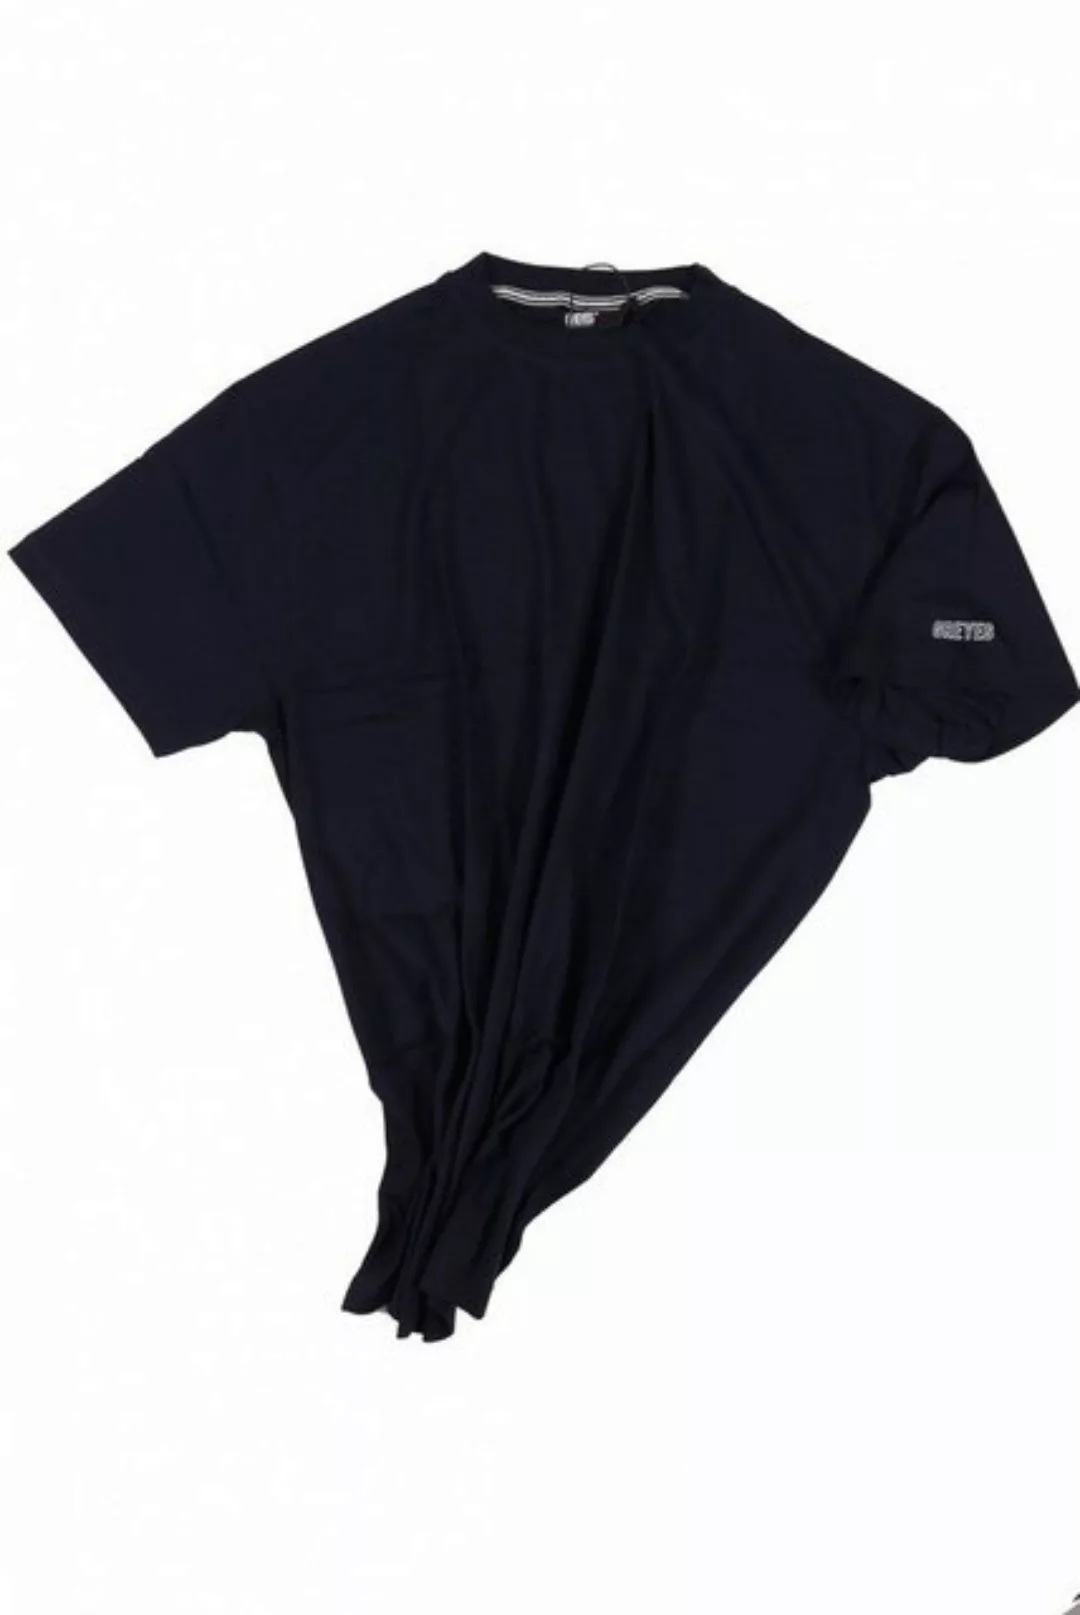 north 56 4 T-Shirt T-Shirt von Allsize in Herrenübergröße bis 8XL, dunkelbl günstig online kaufen